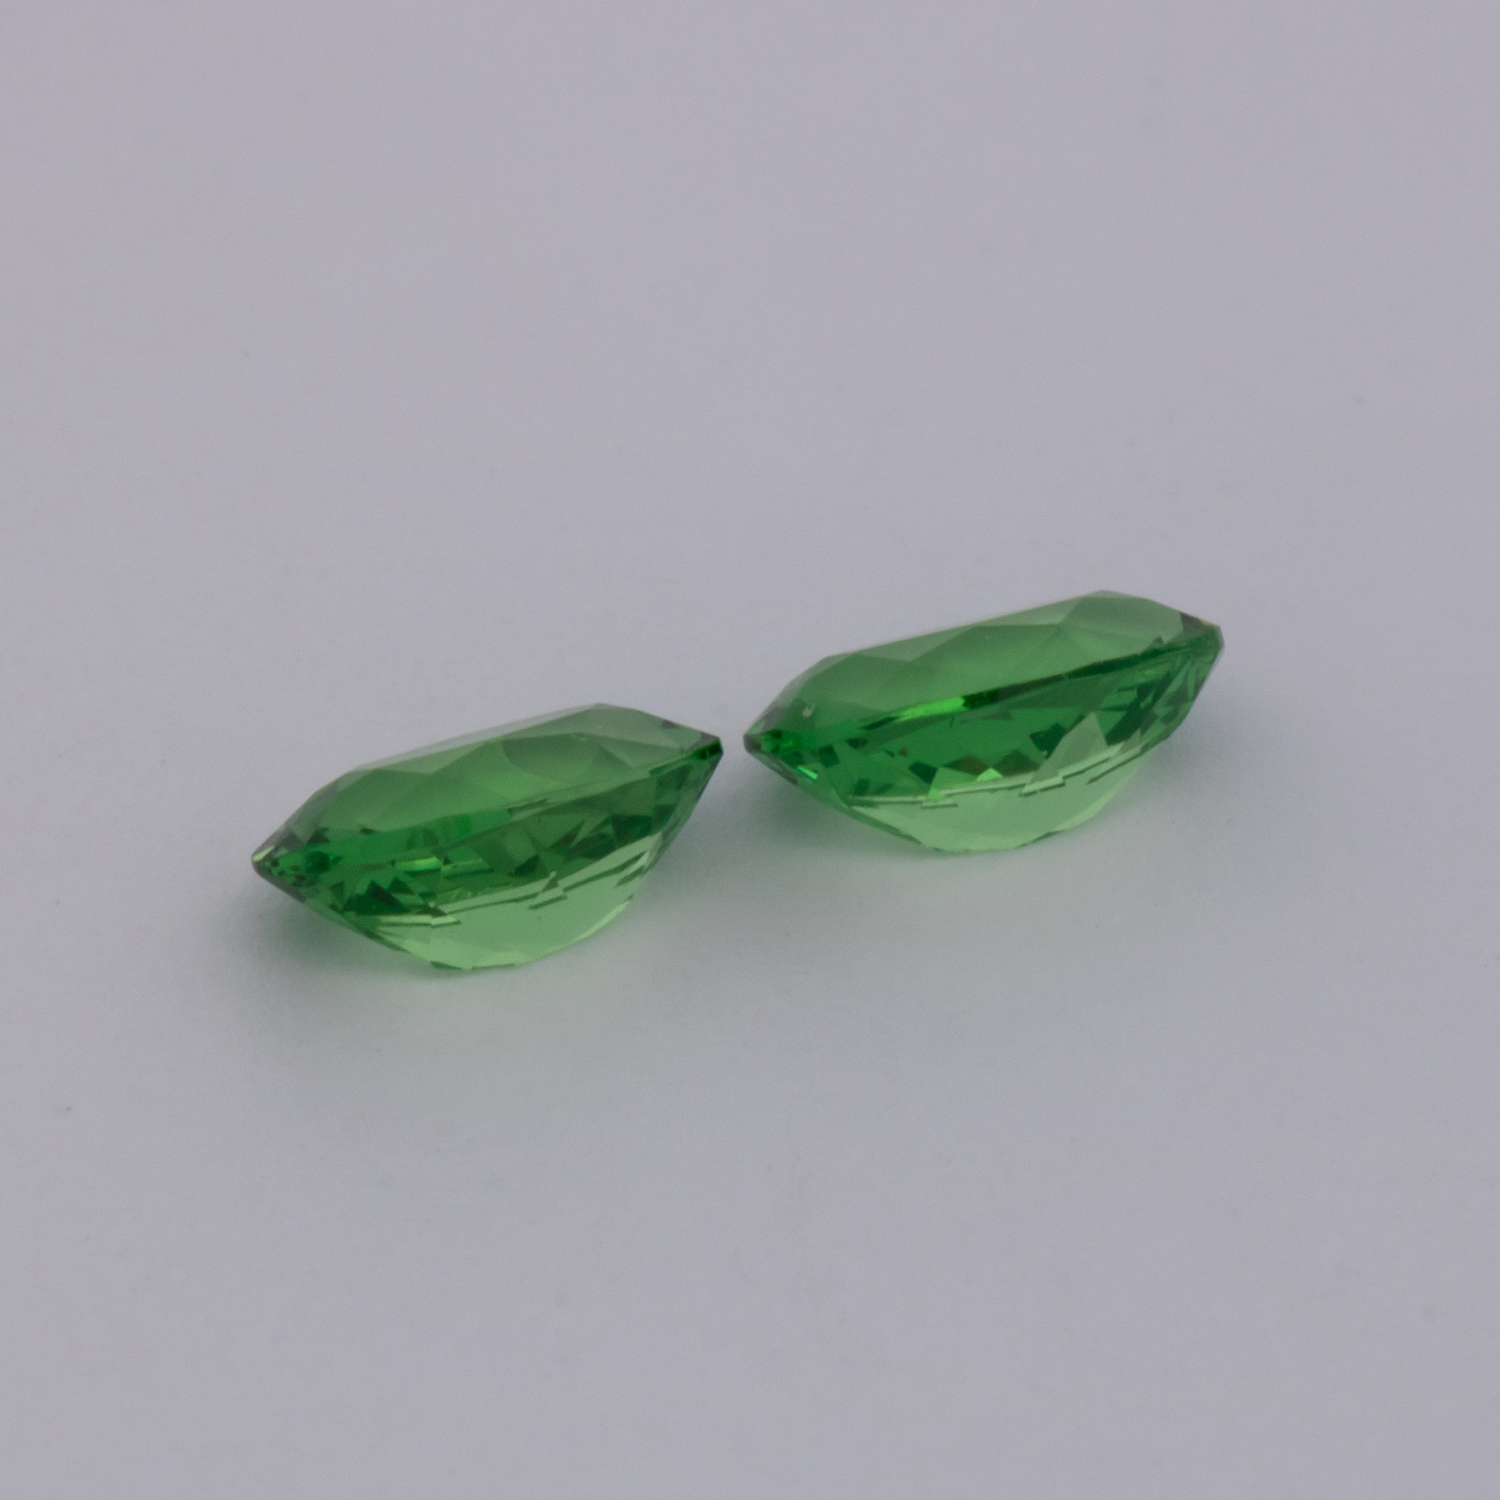 Tsavorit Paar - grün, oval, 6x4 mm, 0.97 cts, Nr. TS91022